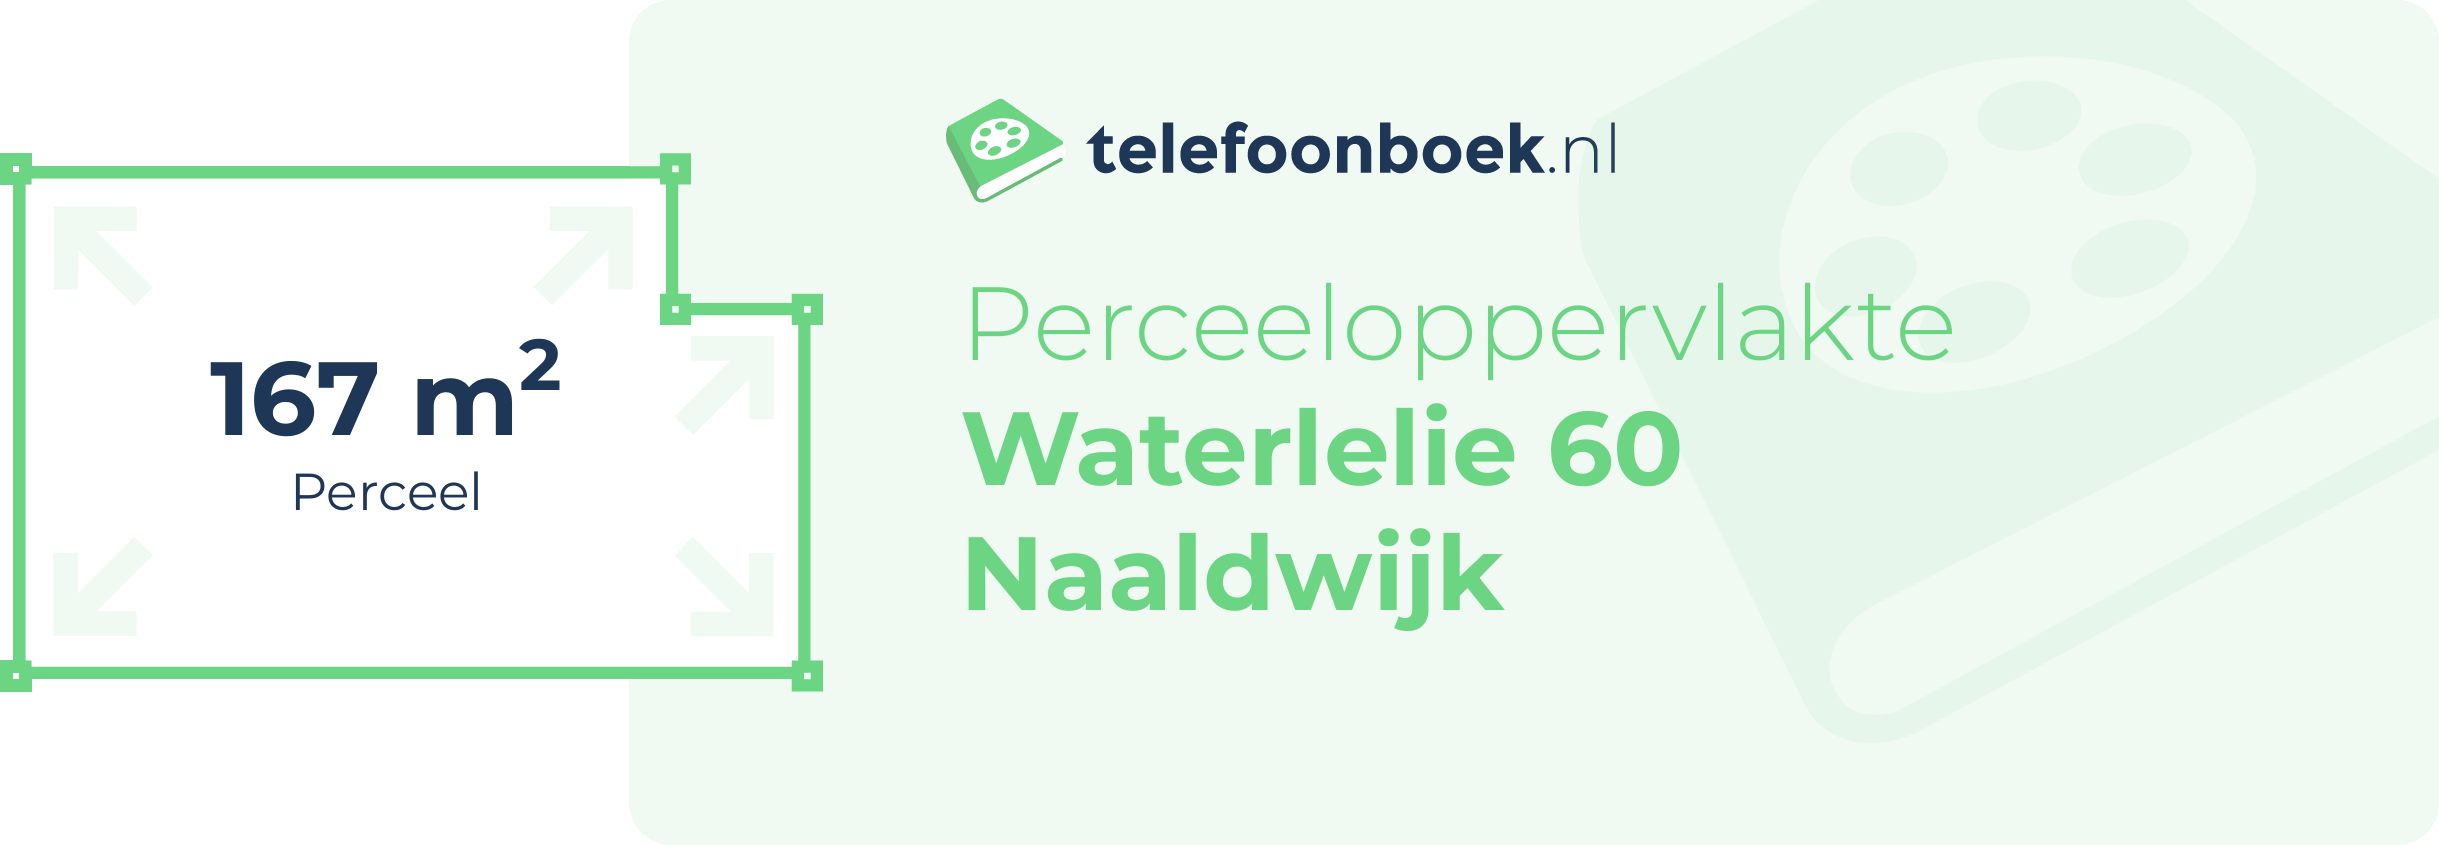 Perceeloppervlakte Waterlelie 60 Naaldwijk